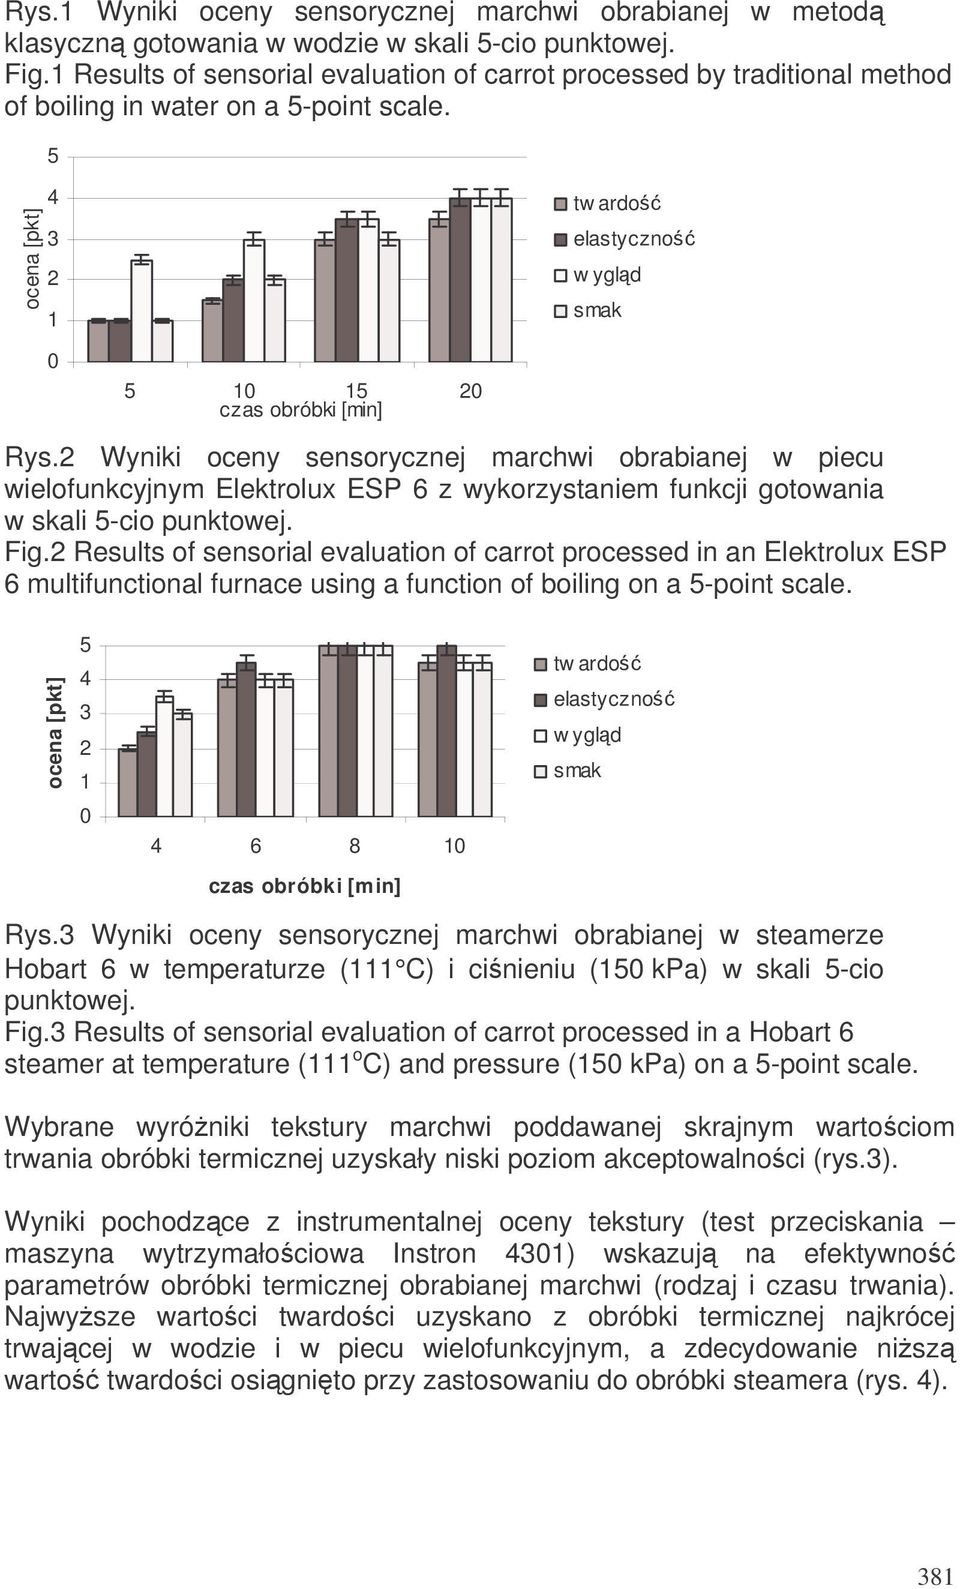 Wyniki oceny sensorycznej marchwi obrabianej w piecu wielofunkcyjnym Elektrolux ESP 6 z wykorzystaniem funkcji gotowania w skali 5-cio punktowej. Fig.